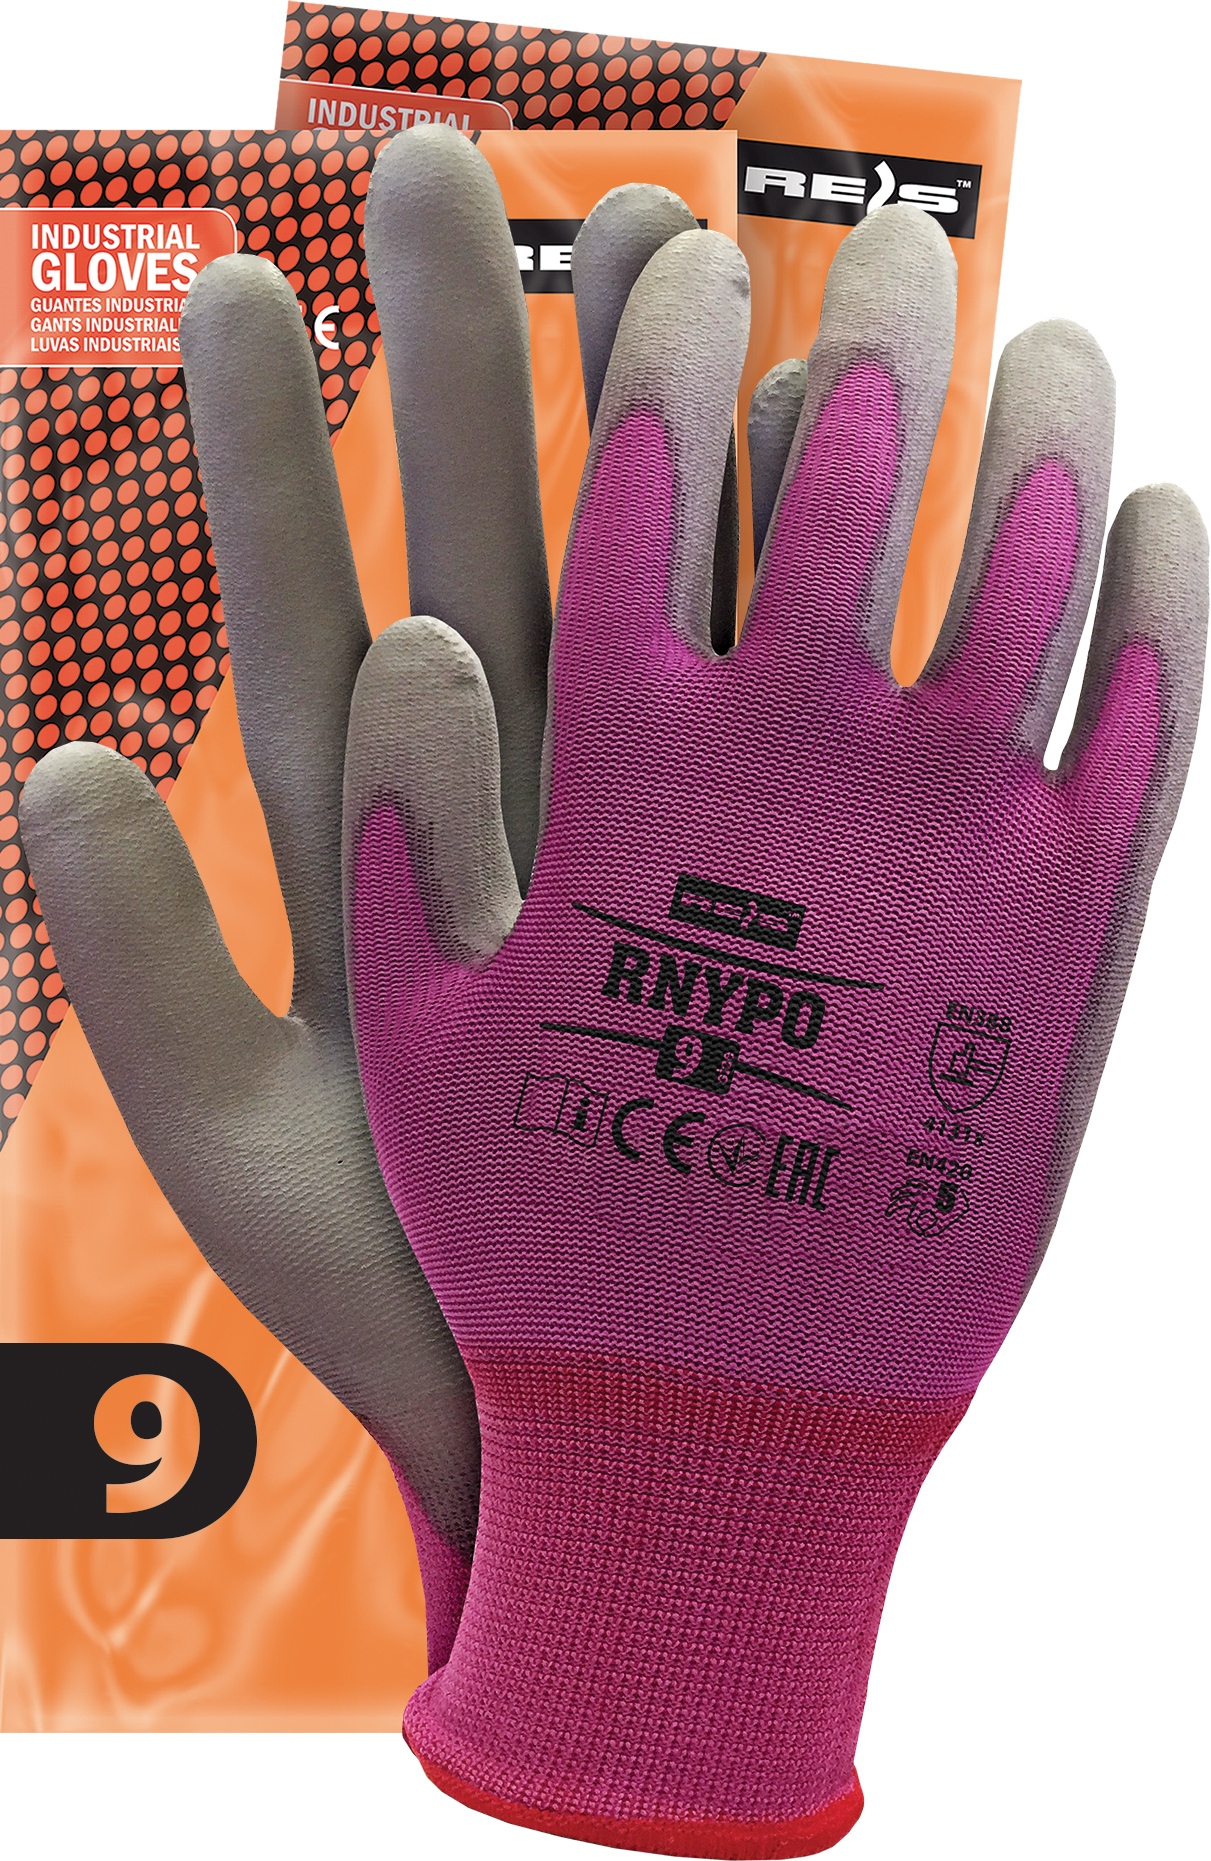 Защитные перчатки Rnypo покрыты полиуретаном